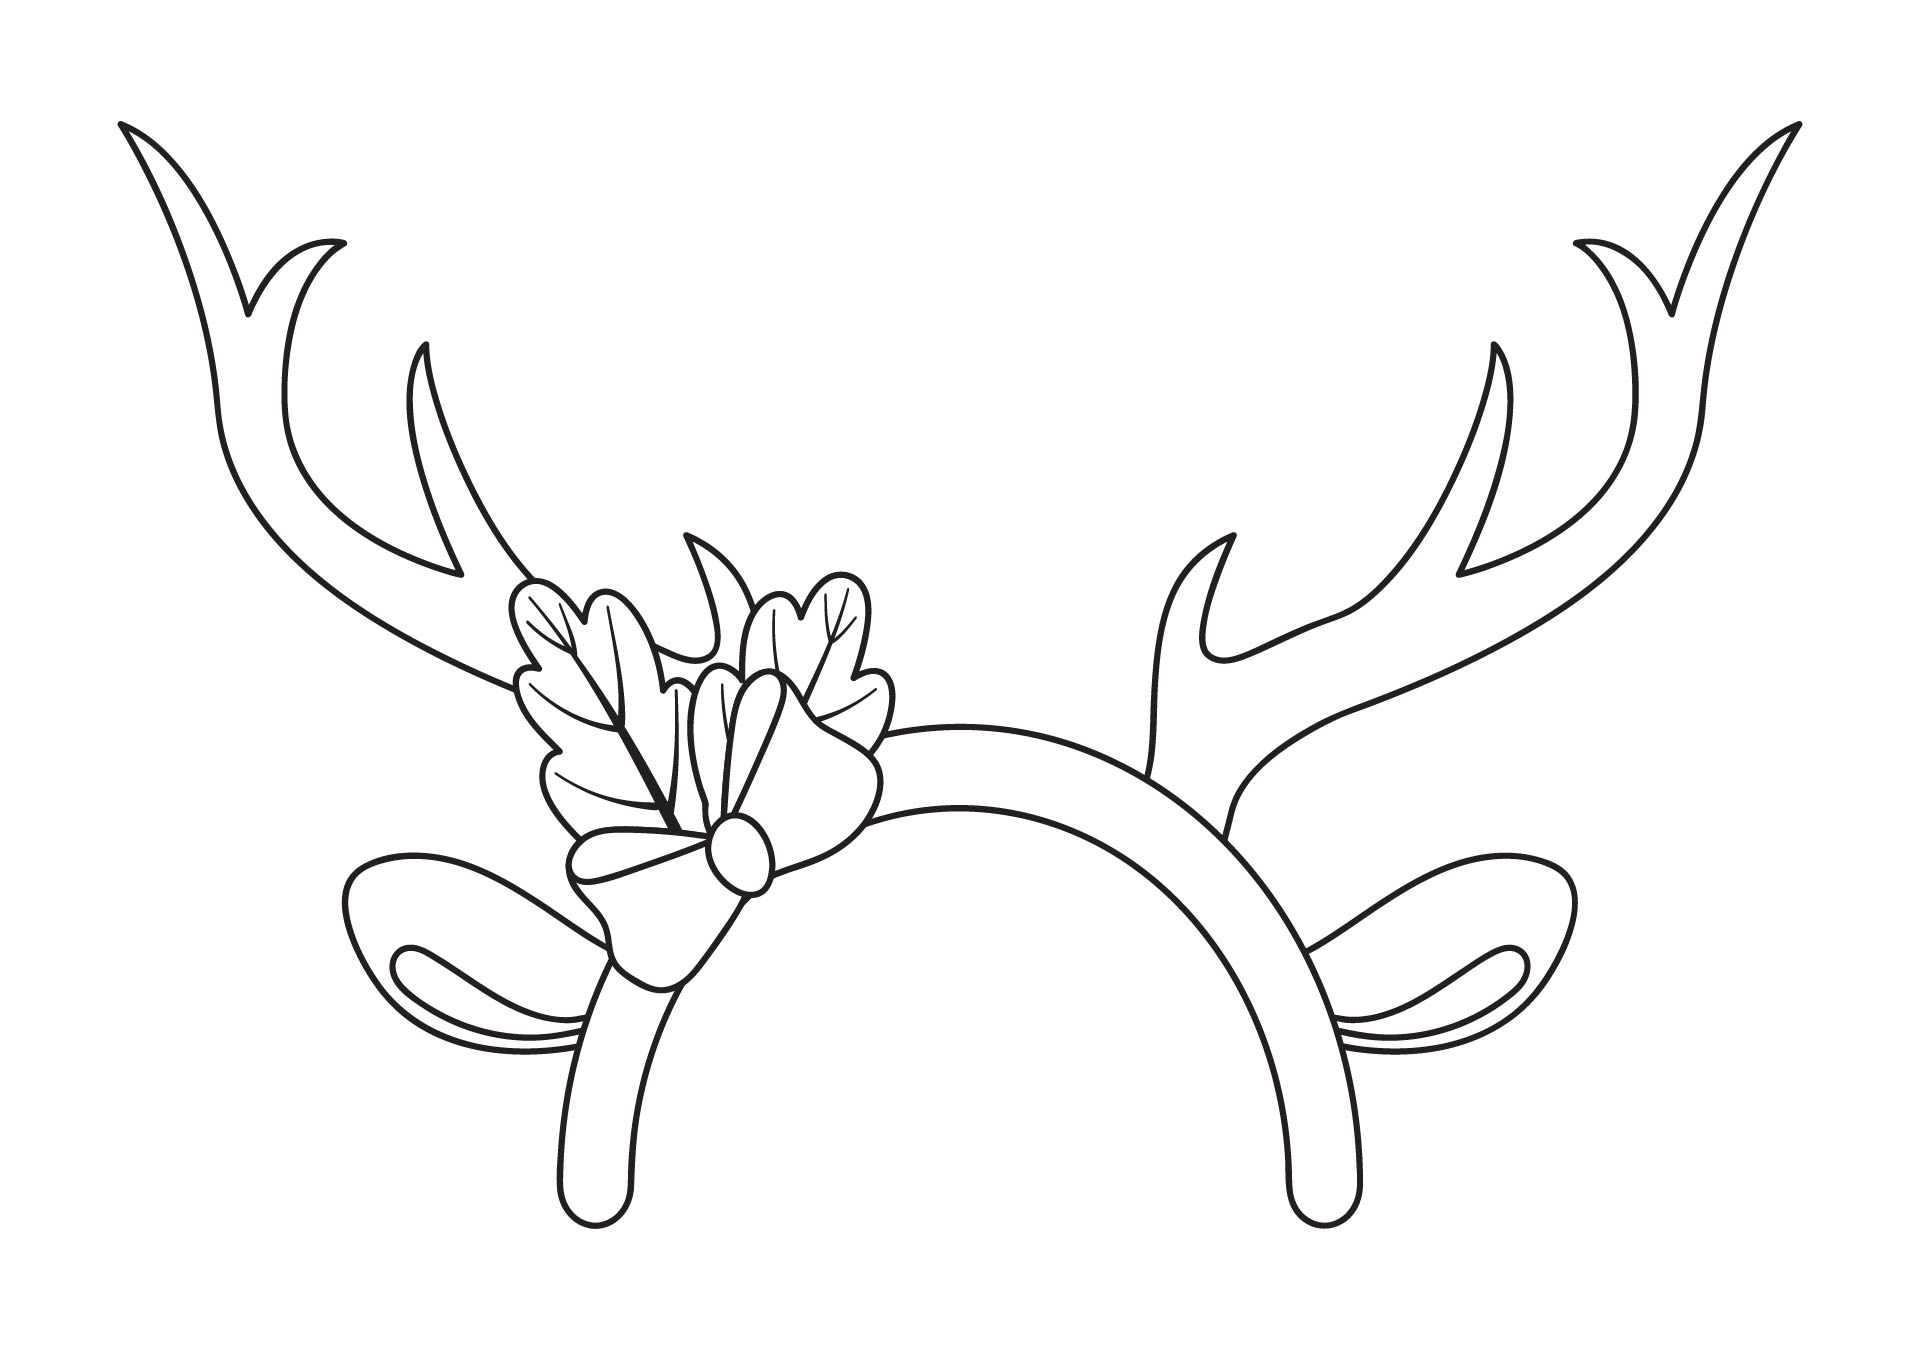 6 Best Images of Antler Pattern Printable Free Reindeer Antler